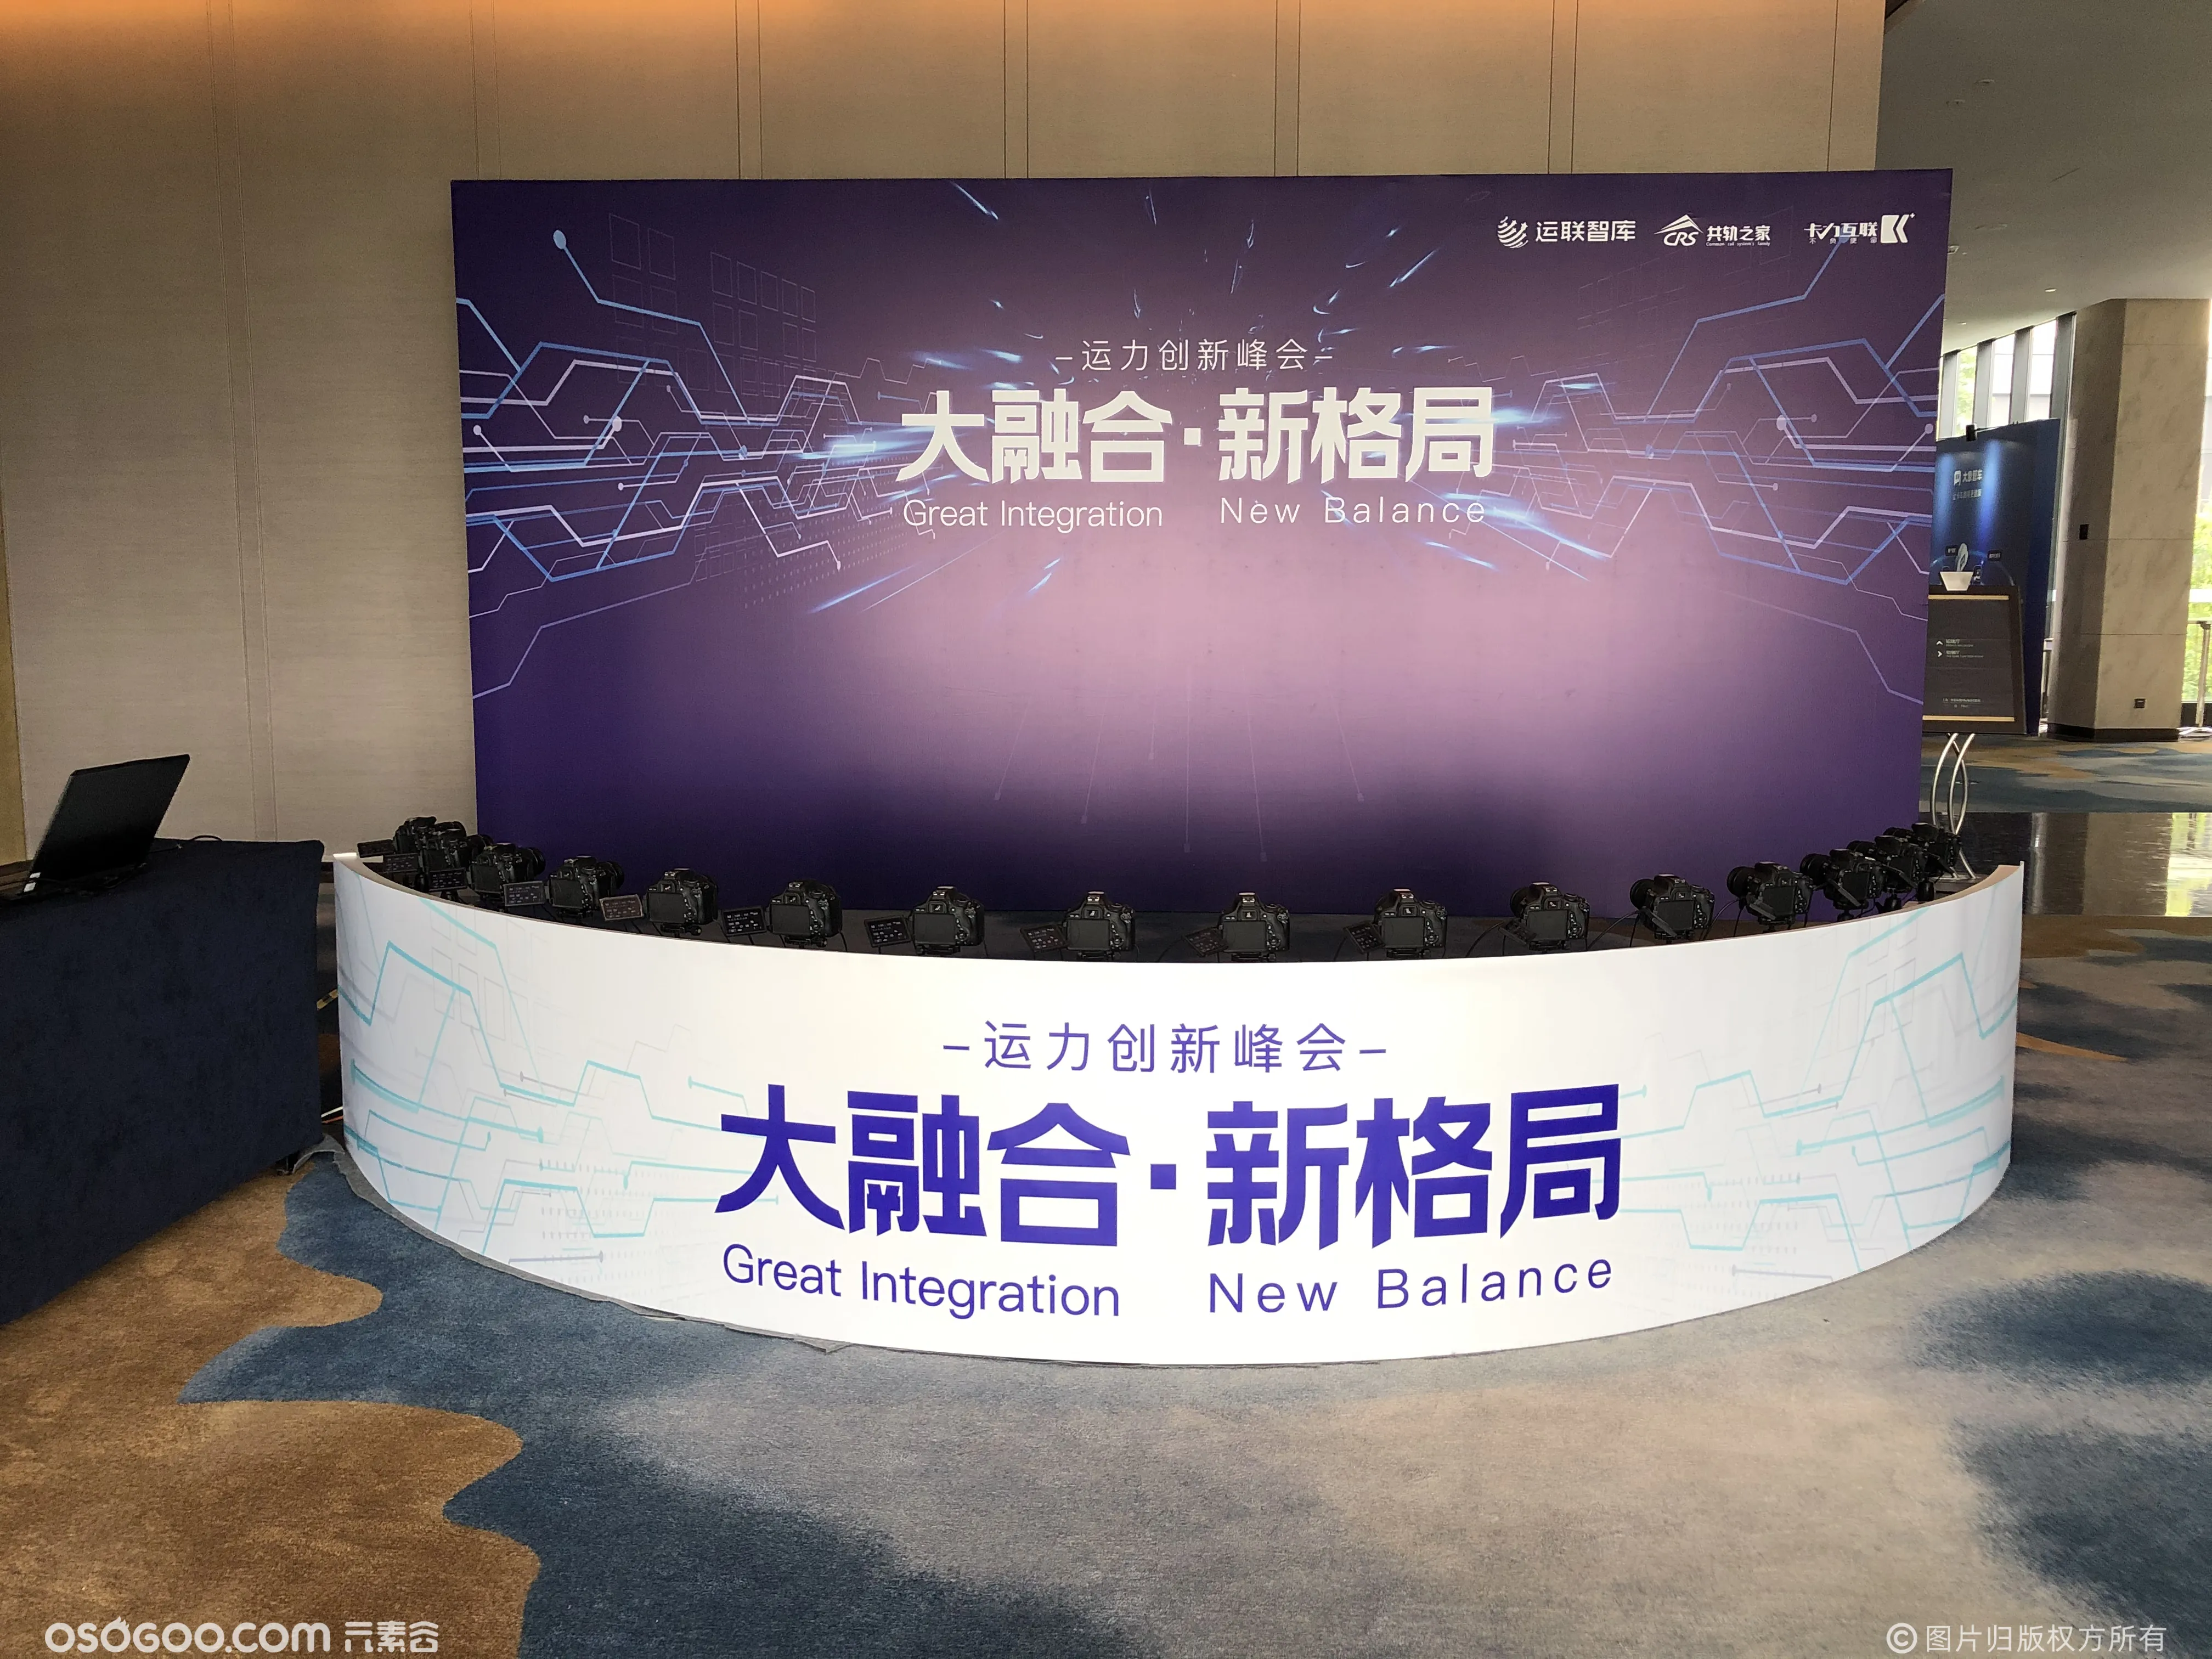 2020上海运力创新峰会子弹时间互动助力活动暖场拍照留念